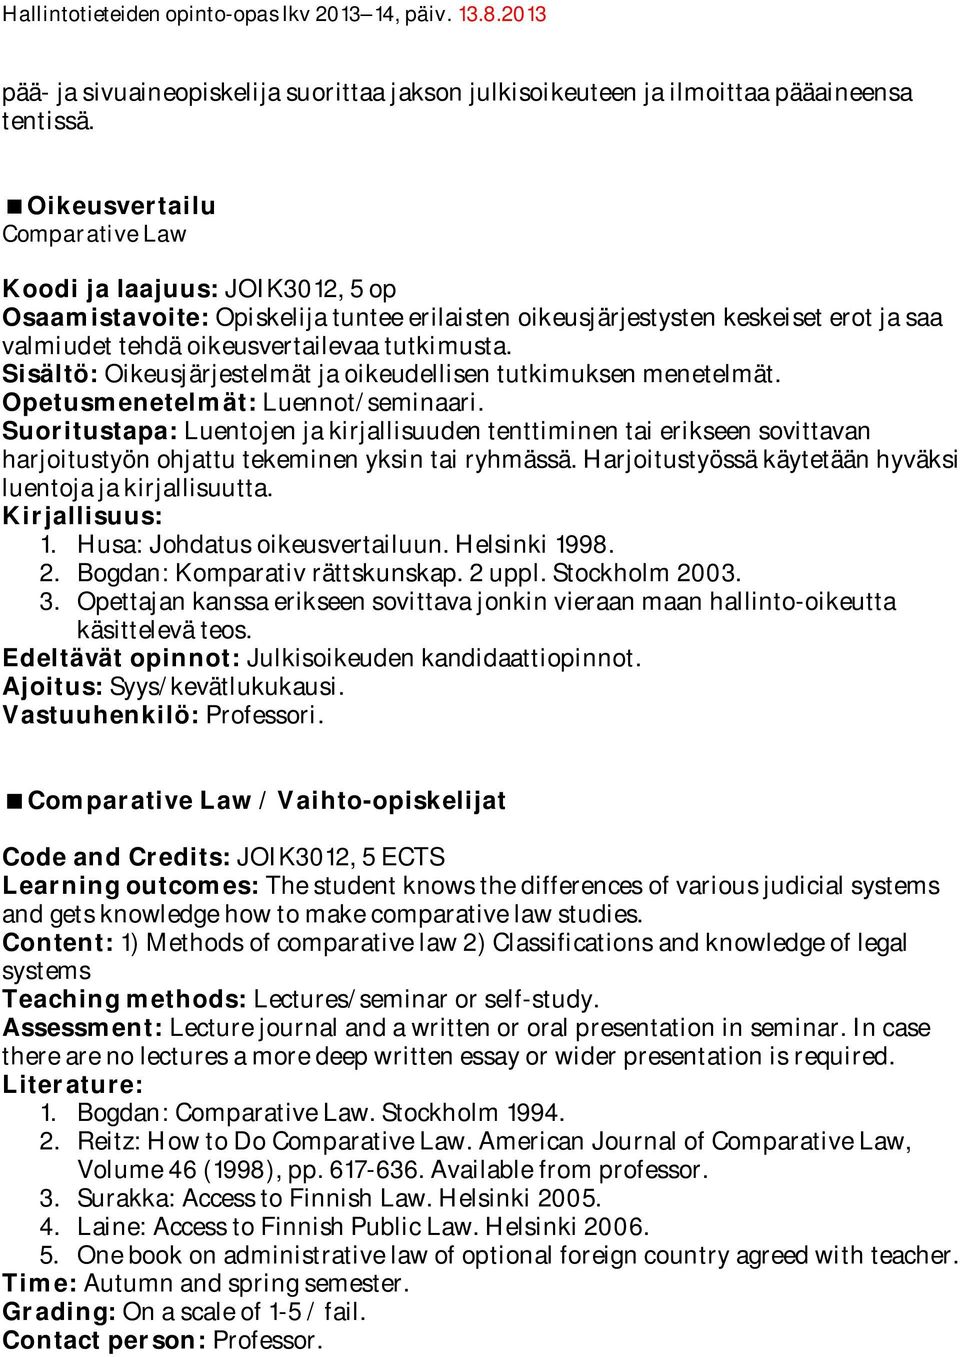 Sisältö: Oikeusjärjestelmät ja oikeudellisen tutkimuksen menetelmät. Opetusmenetelmät: Luennot/seminaari.